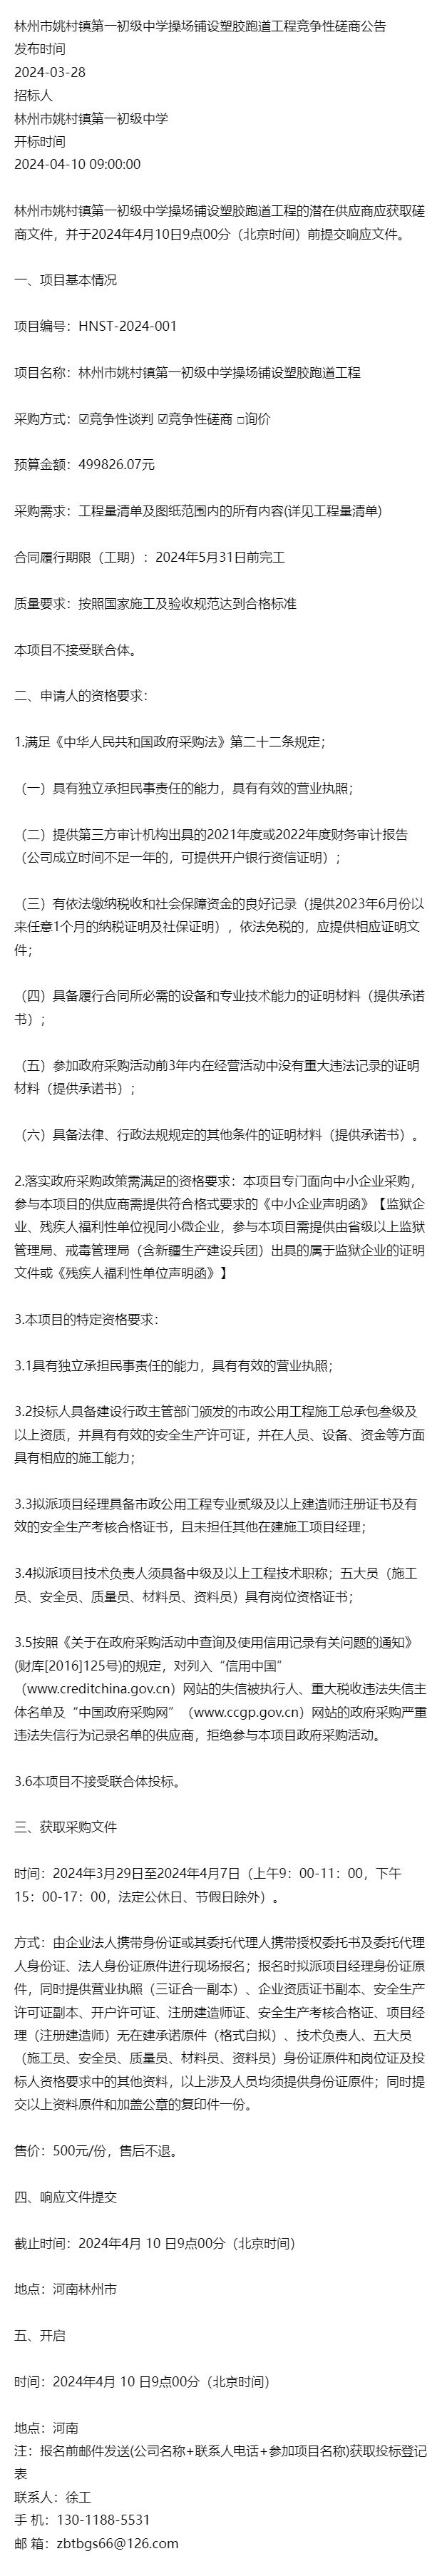 林州市姚村镇第一初级中学操场铺设塑胶跑道工程竞争性磋商公告